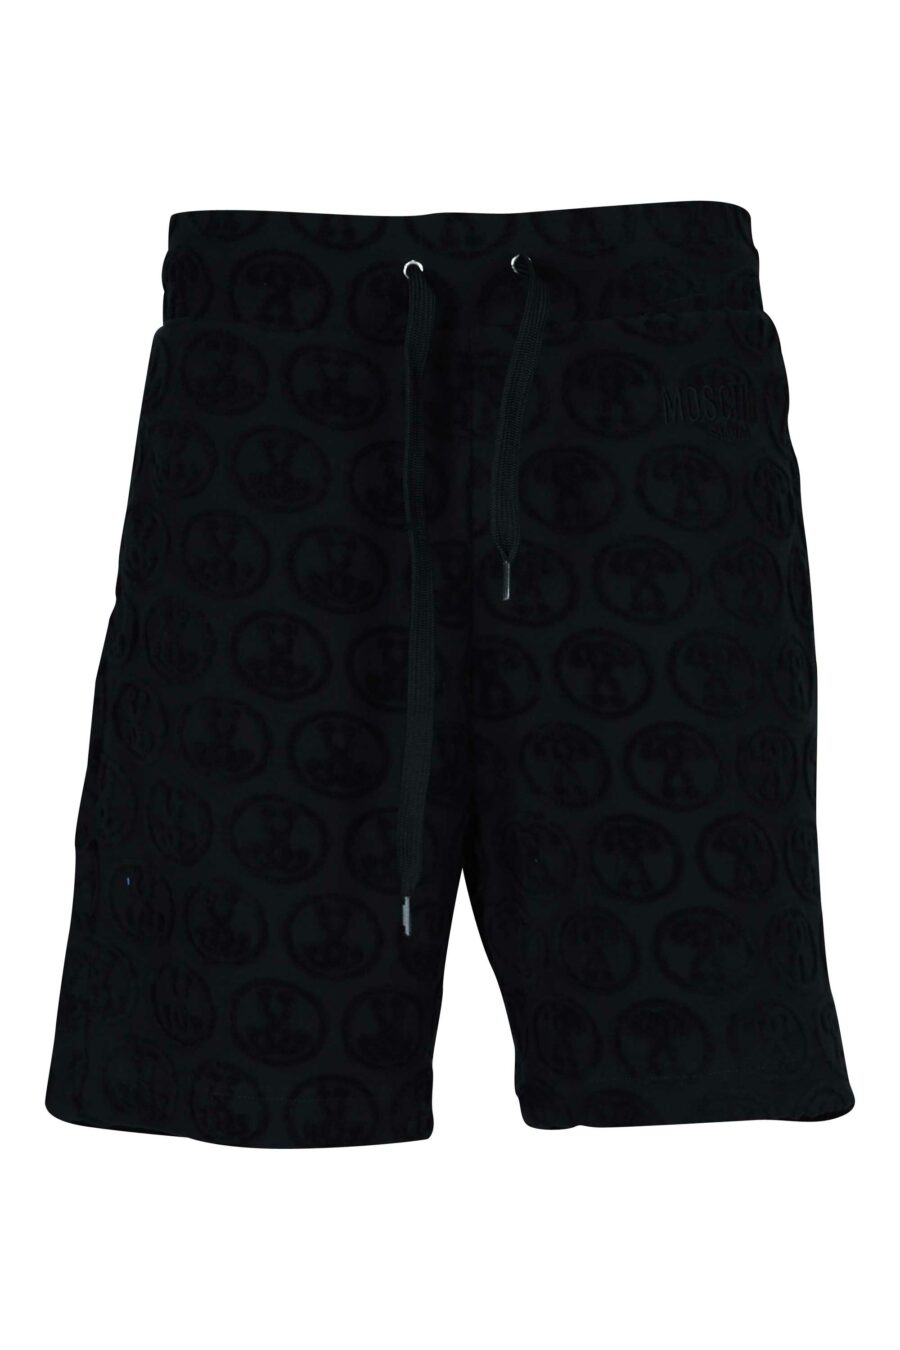 Pantalón corto negro "all over logo" doble pregunta - 667113684130